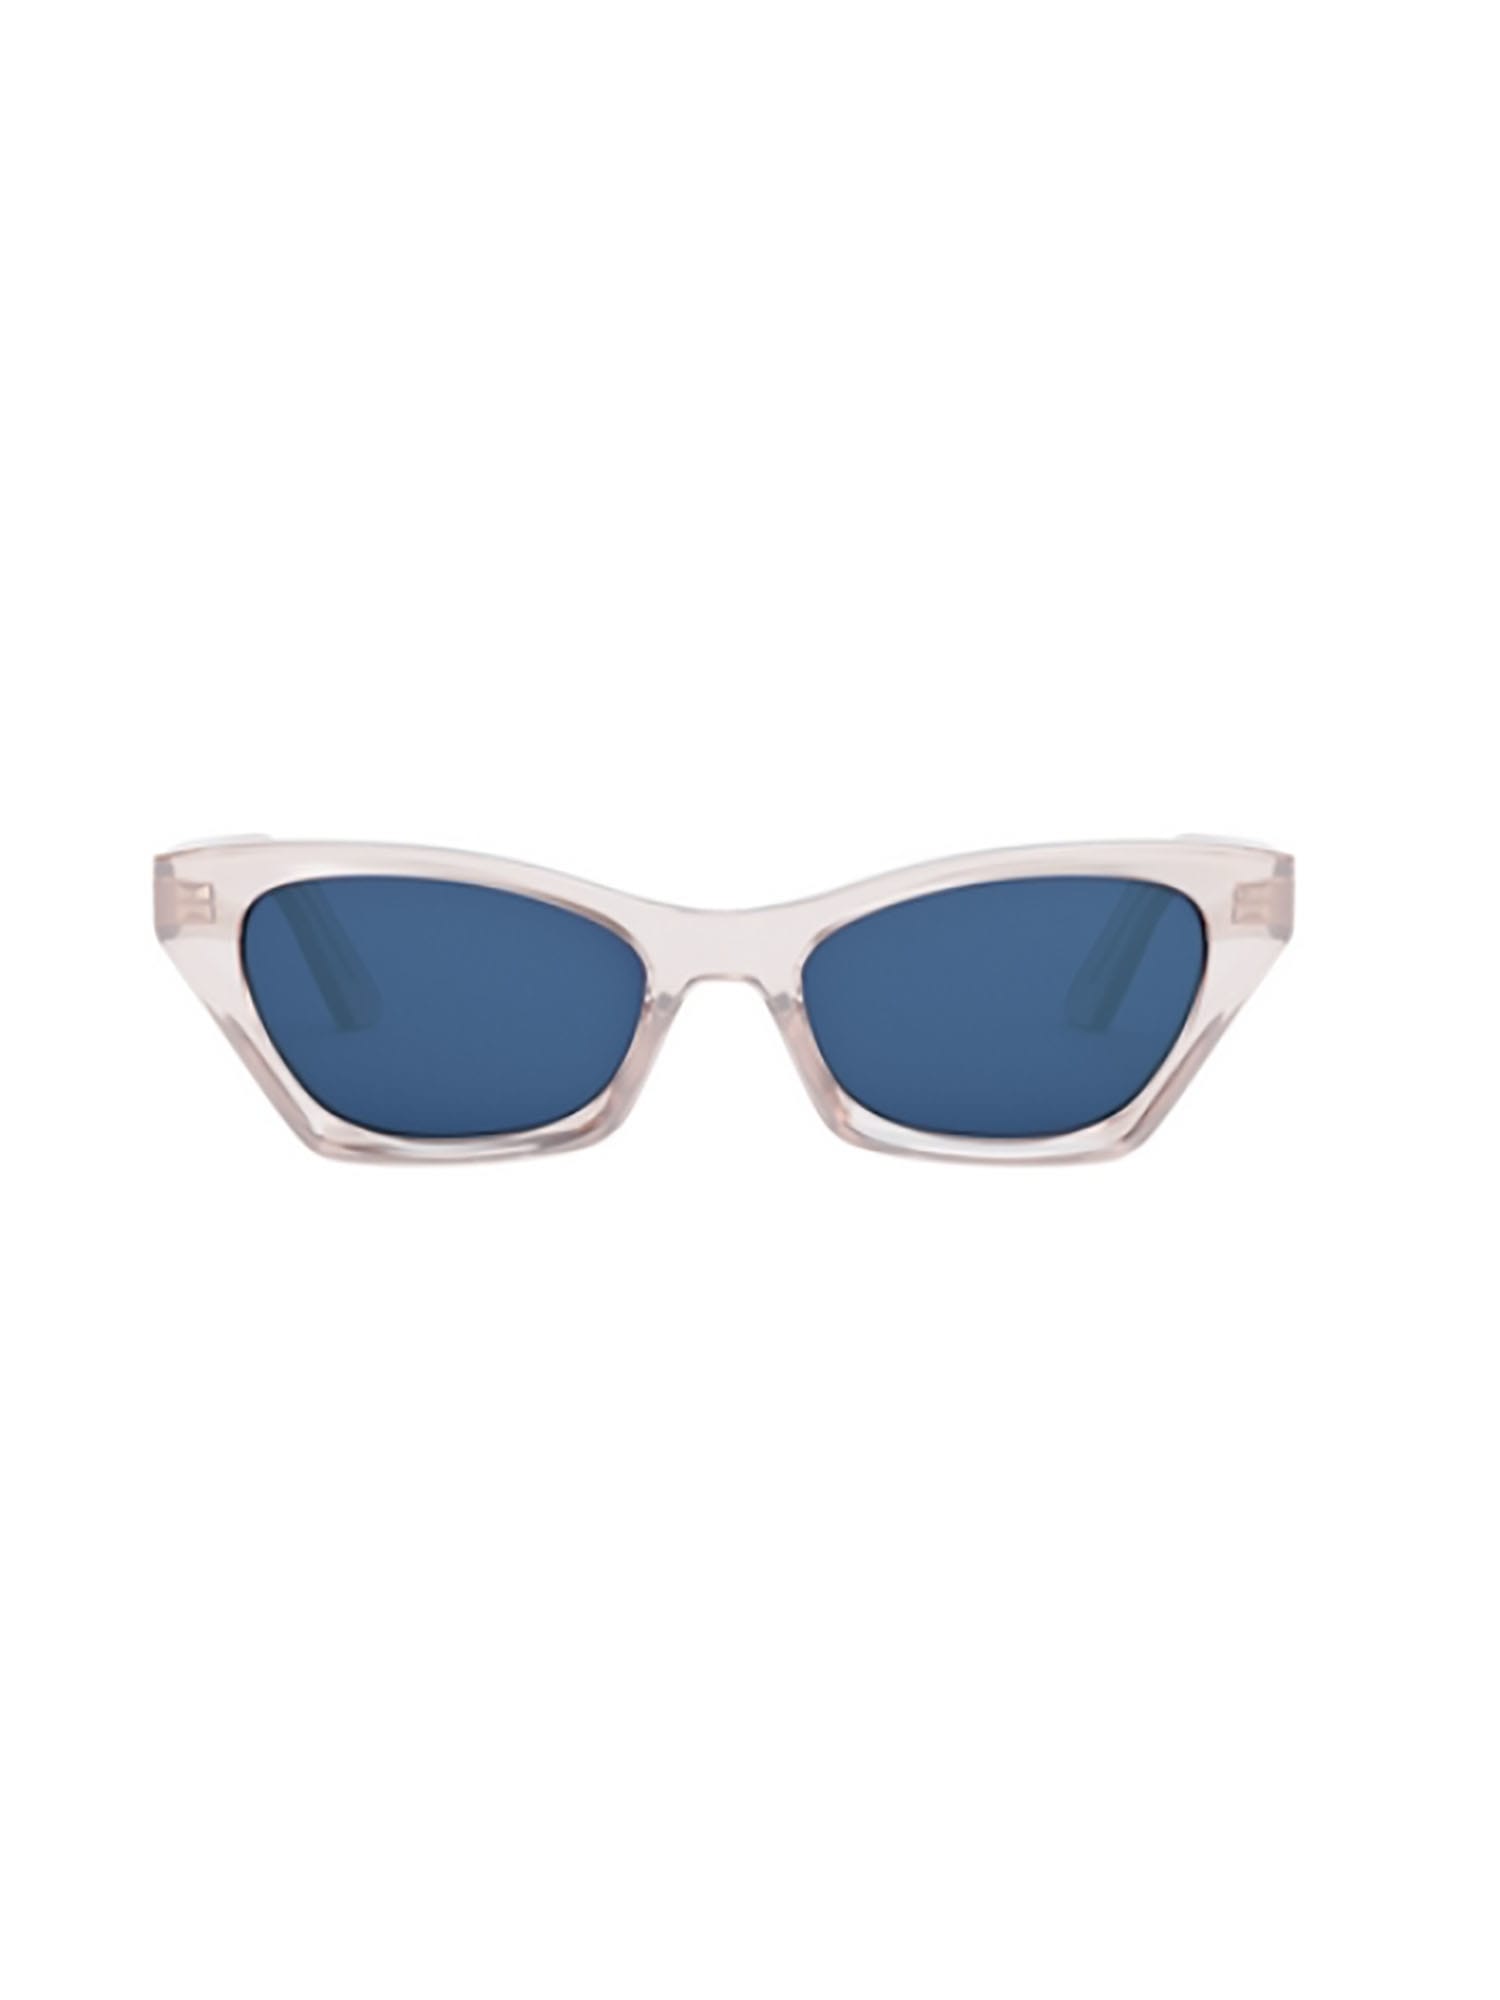 Dior Eyewear DIORMIDNIGHT B1I Sunglasses